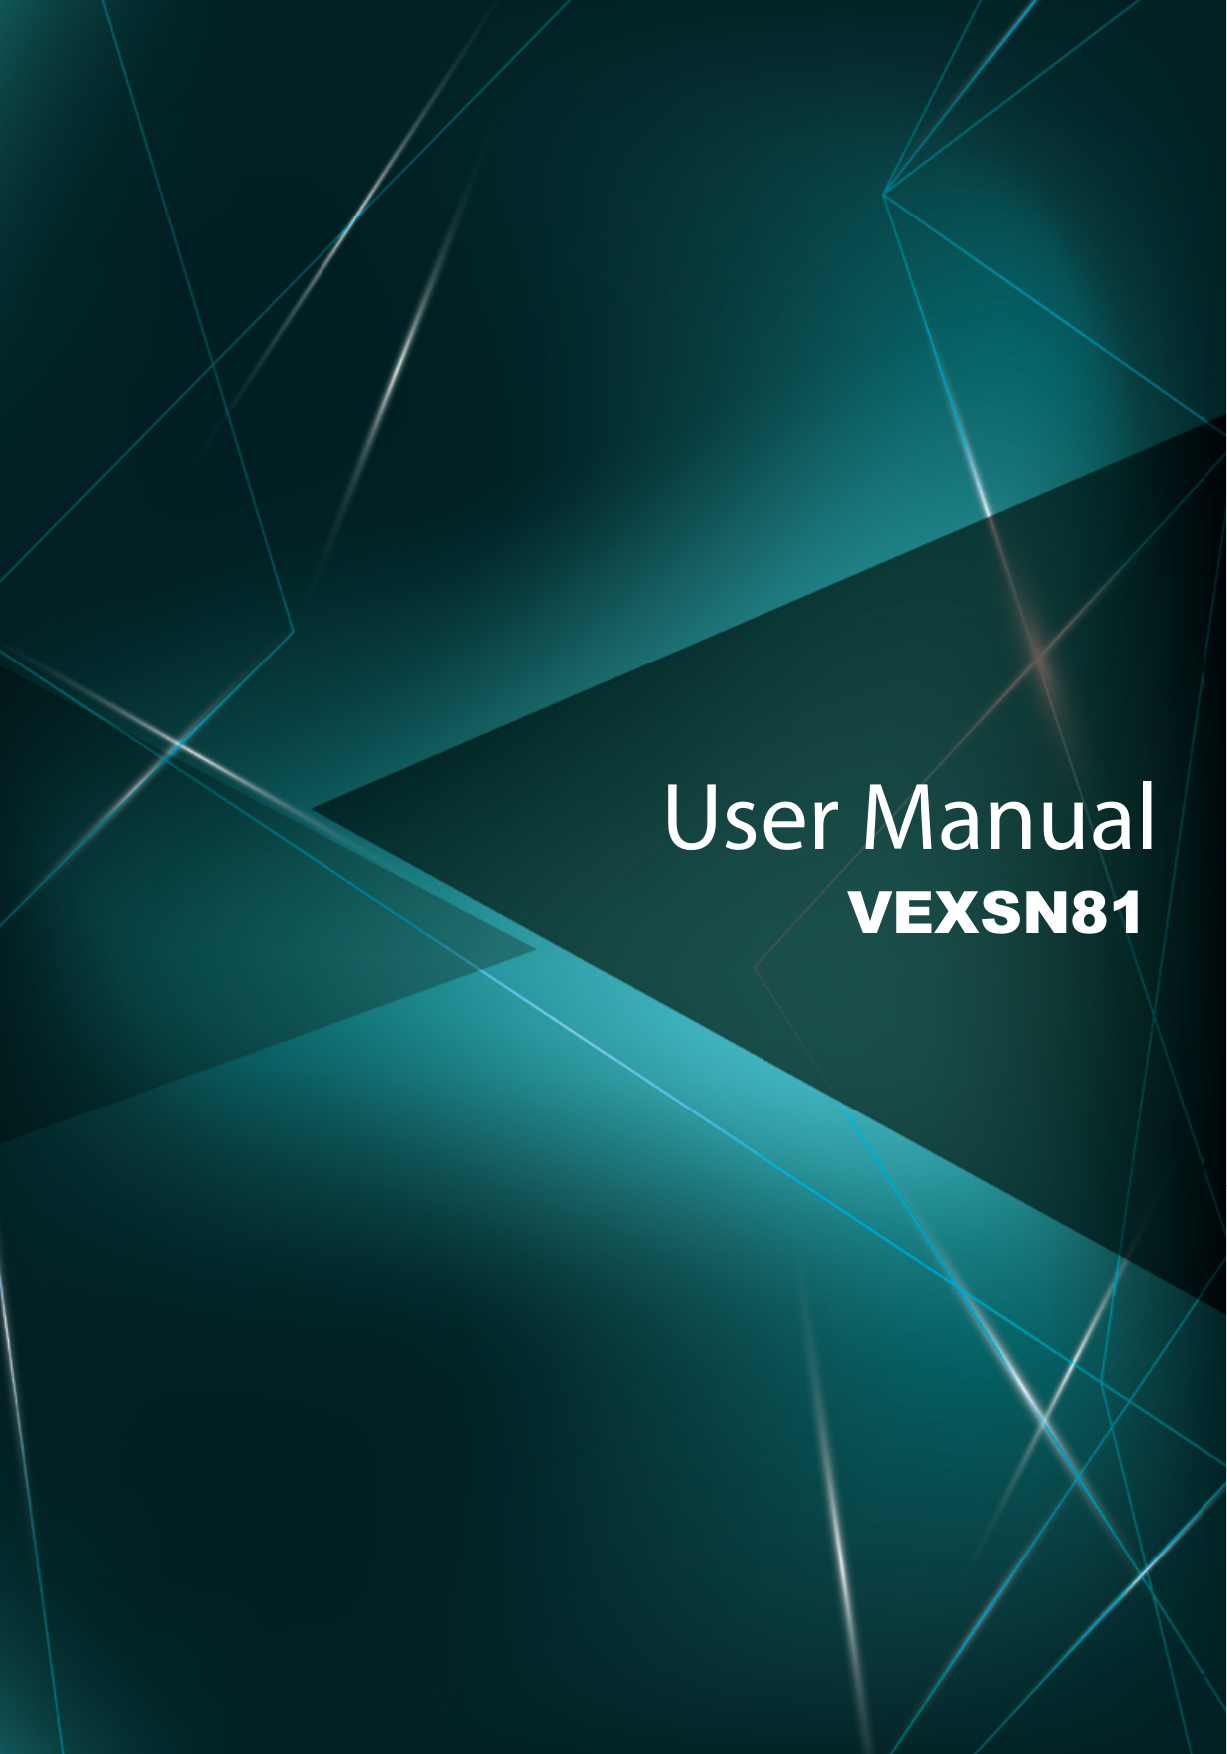 User ManualVEXSN81